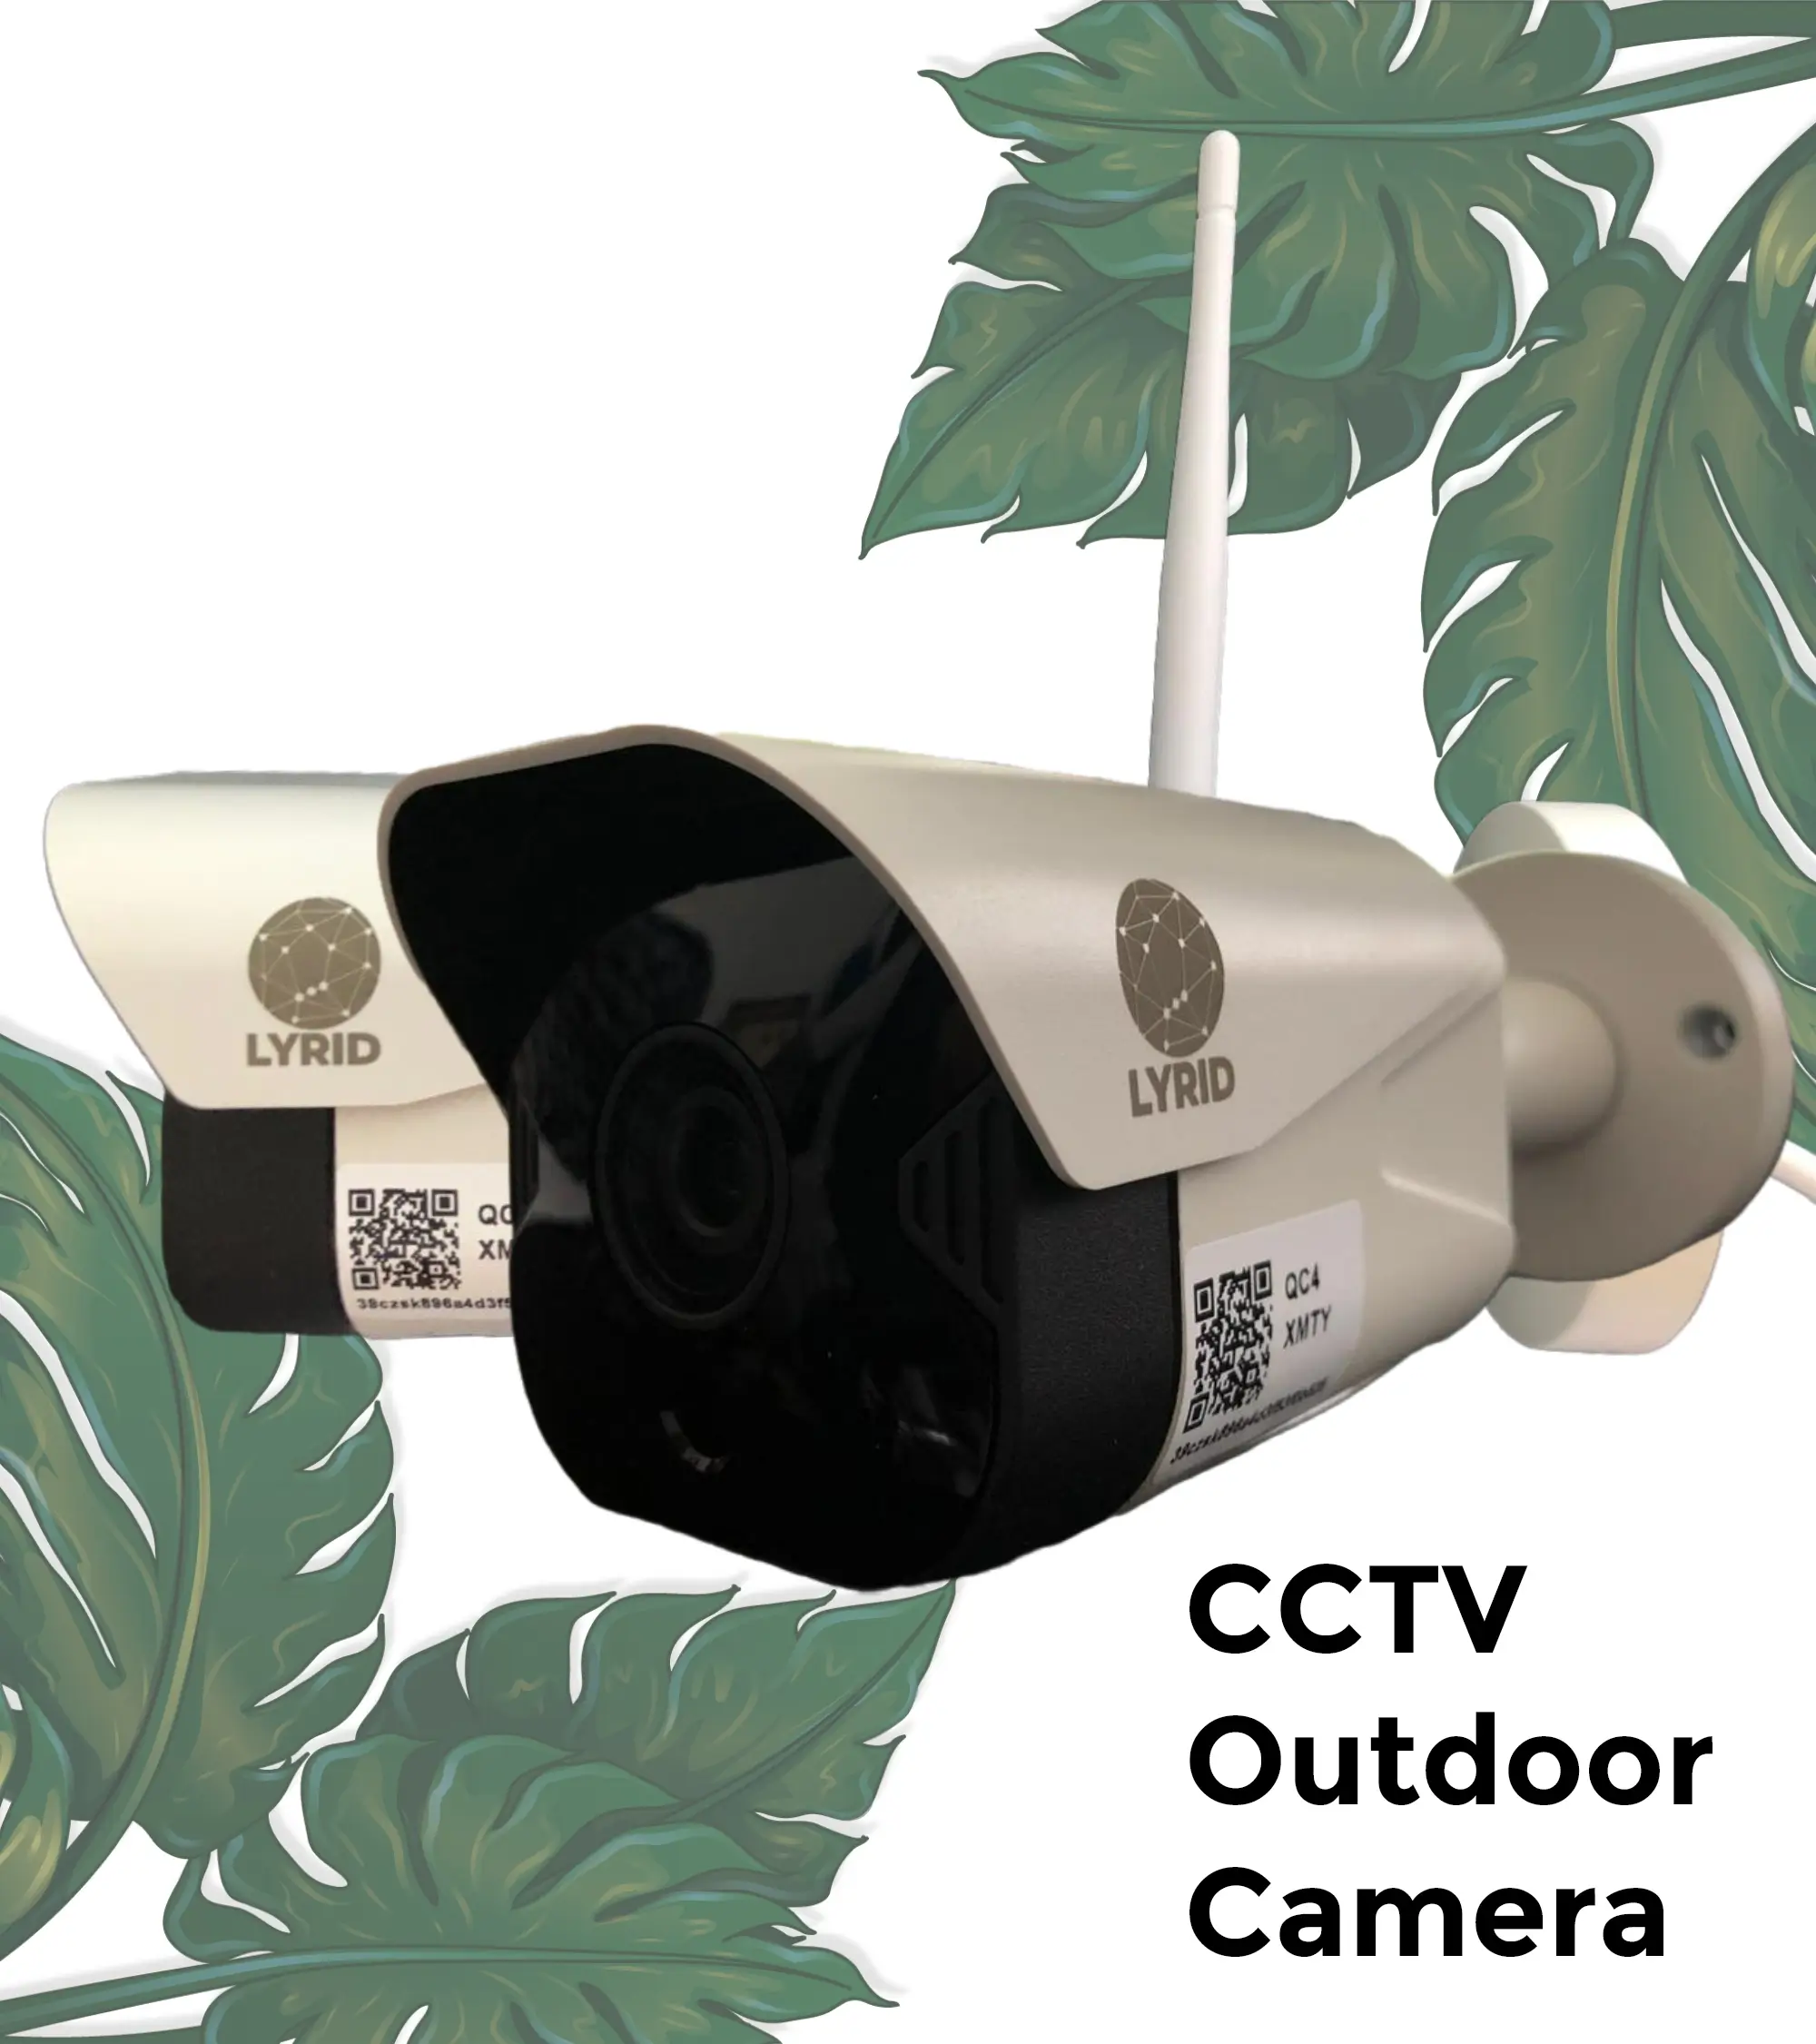 CCTV Outdoor